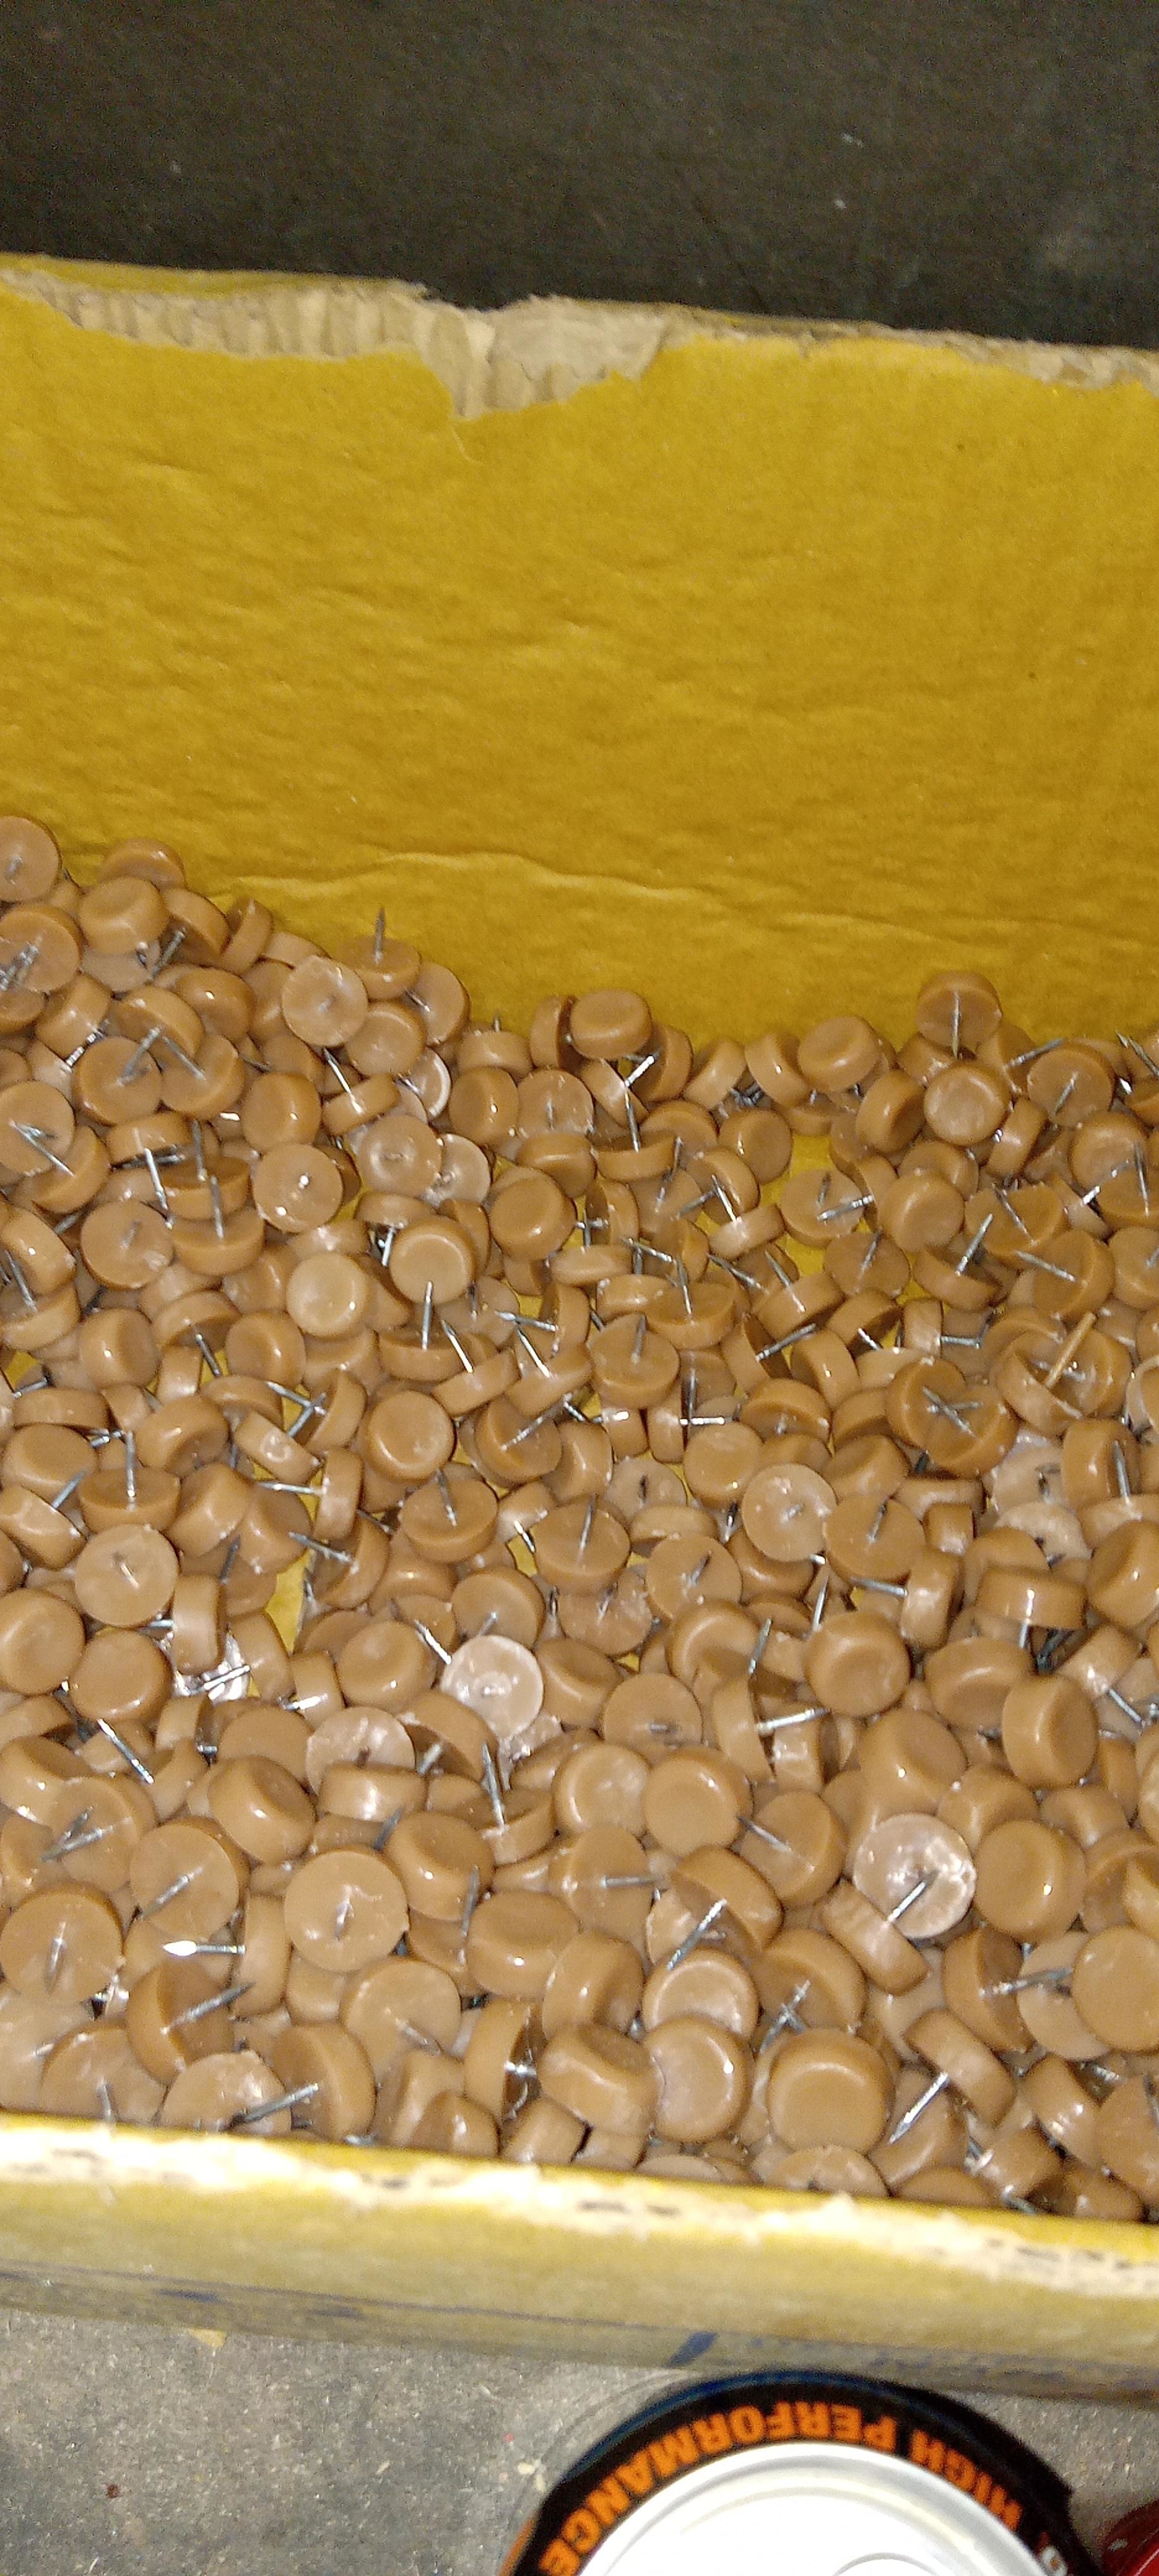 a bin of tan colored tacks